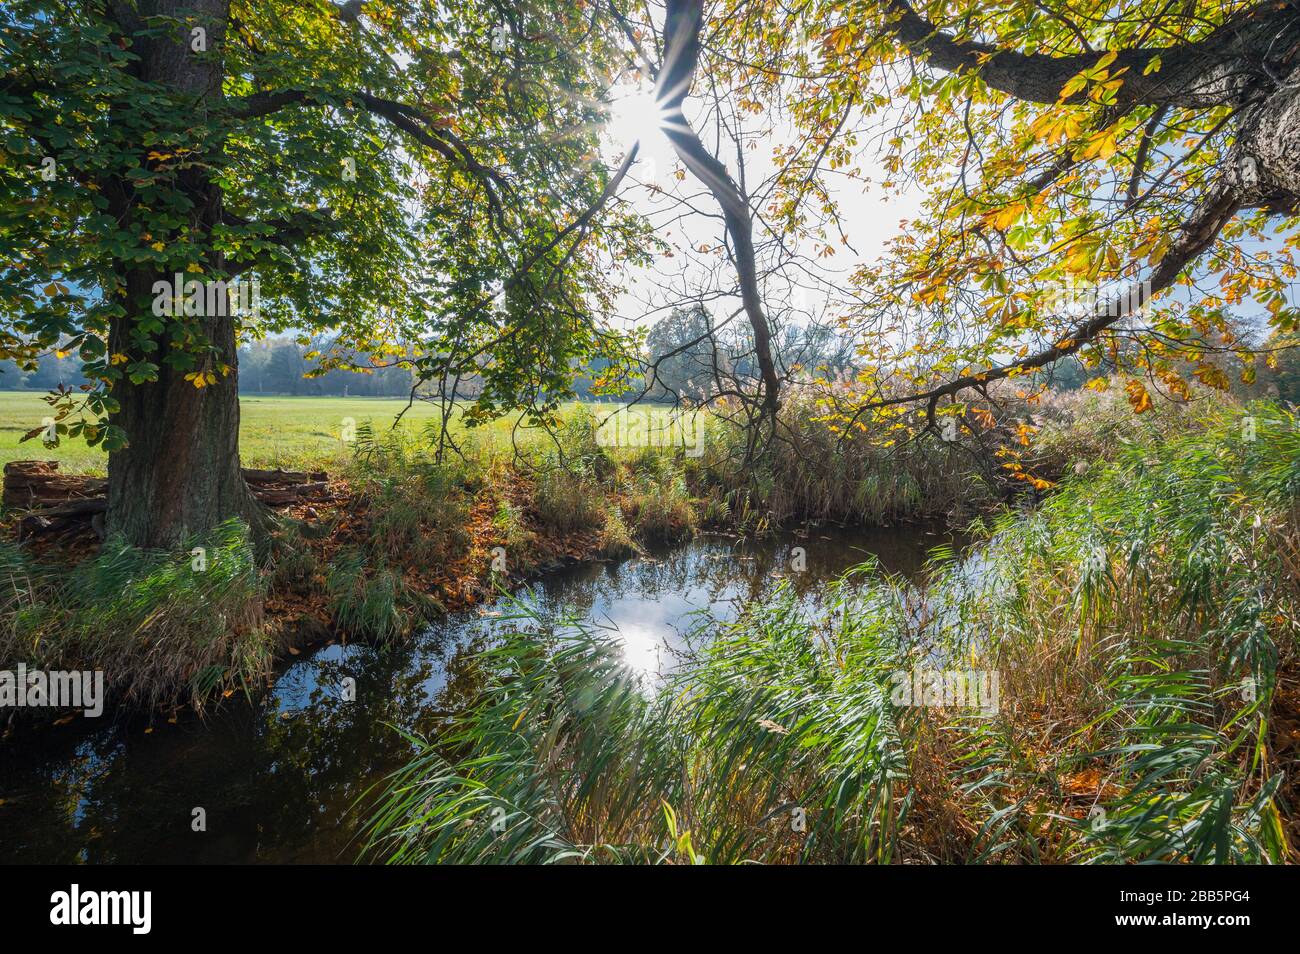 Kastanienbaum am Bach mit Sonne im Herbst, Naturschutzgebiet, Moenchbruch, bei Moerfelden und Rüsselsheim, Hessen, Deutschland Stockfoto